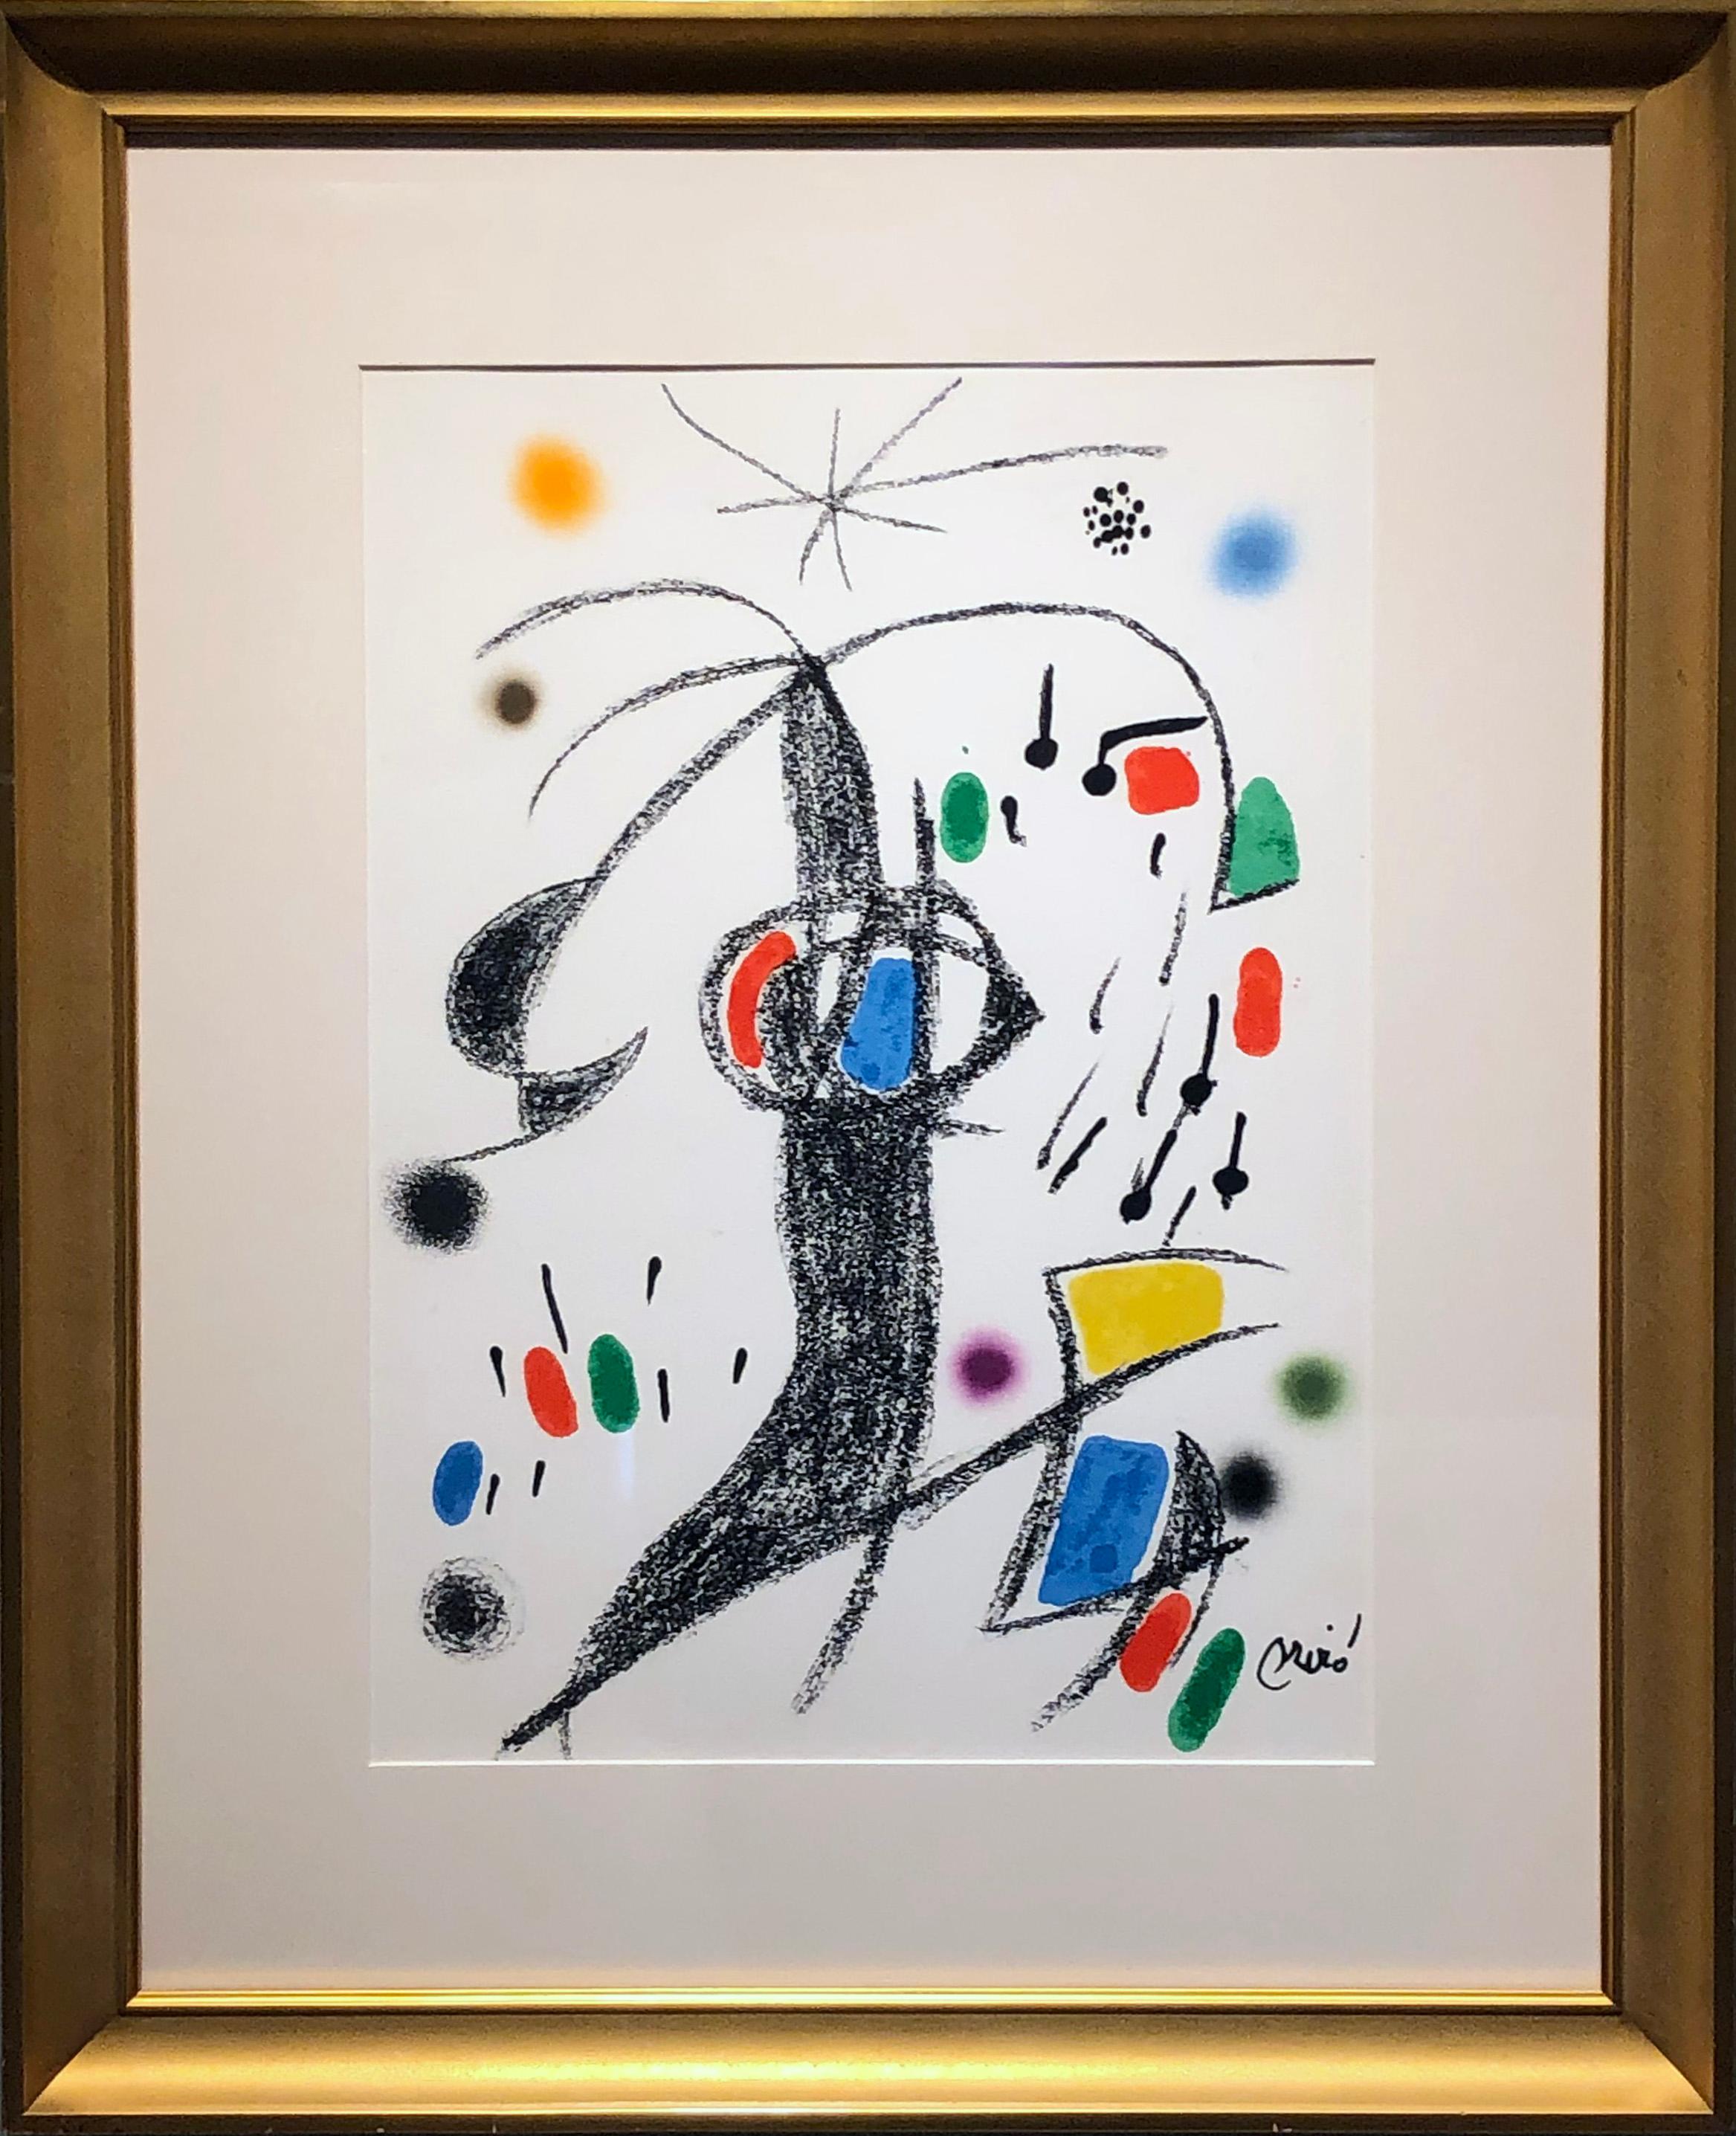 Maravillas con variaciones acrósticas en el jardín de Miró (XIX) - Print by Joan Miró